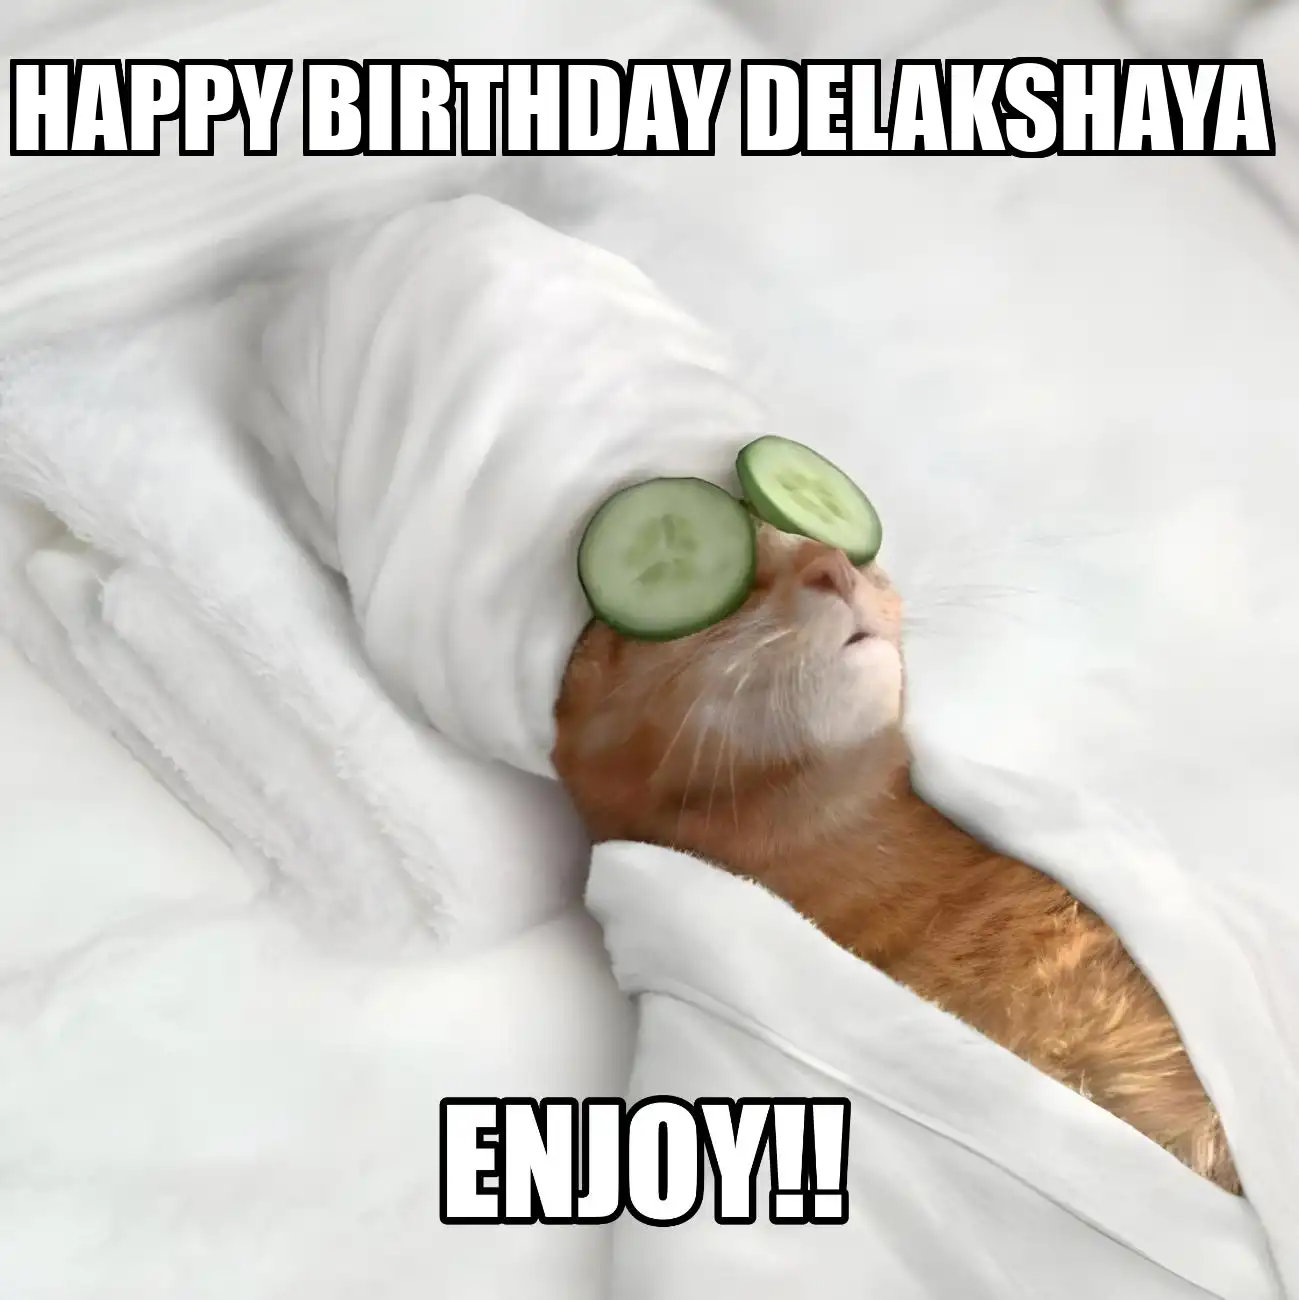 Happy Birthday Delakshaya Enjoy Cat Meme